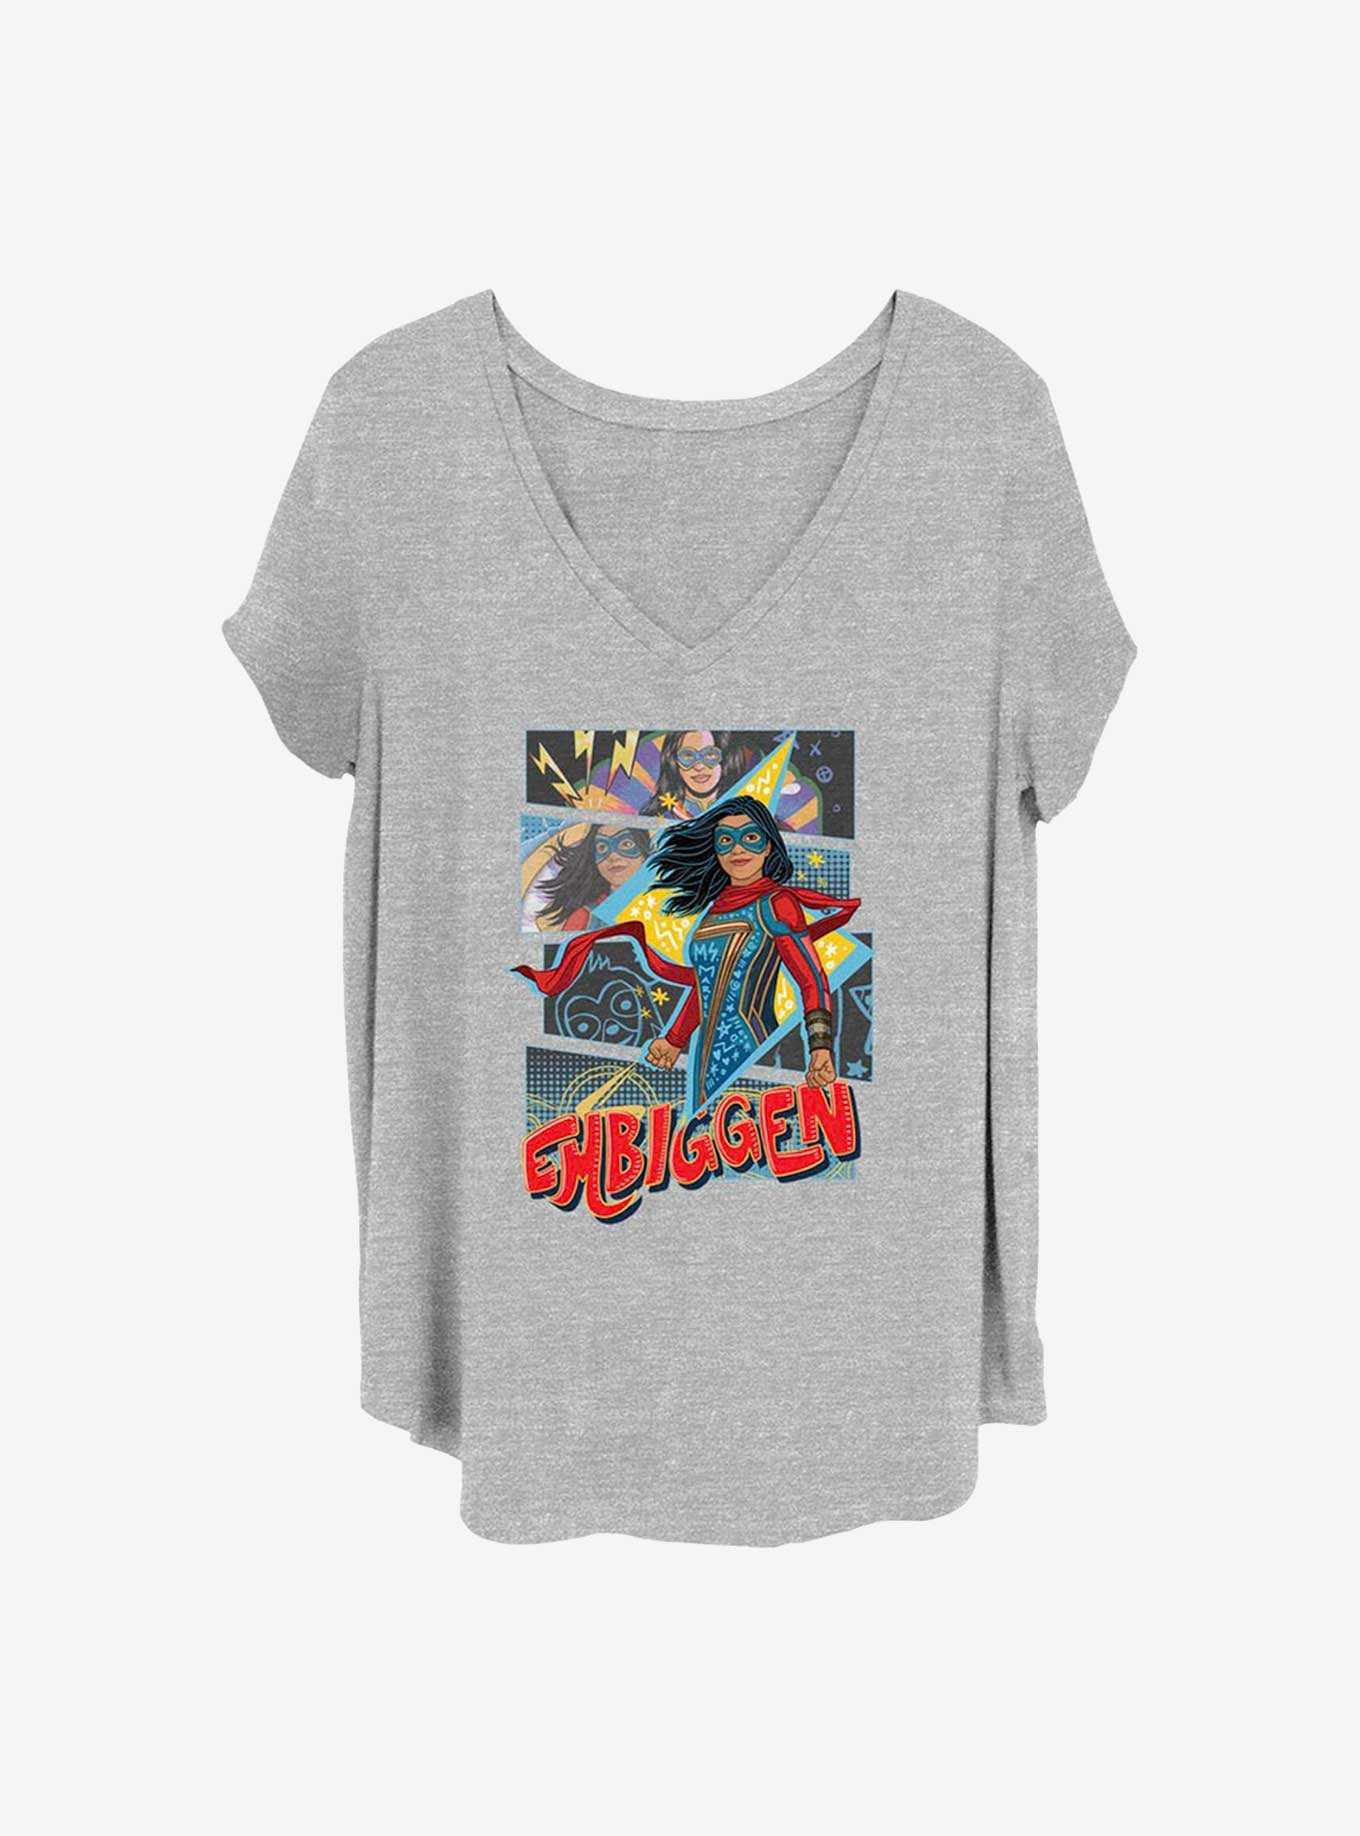 Marvel Ms. Marvel Embiggen Girls Plus T-Shirt, , hi-res